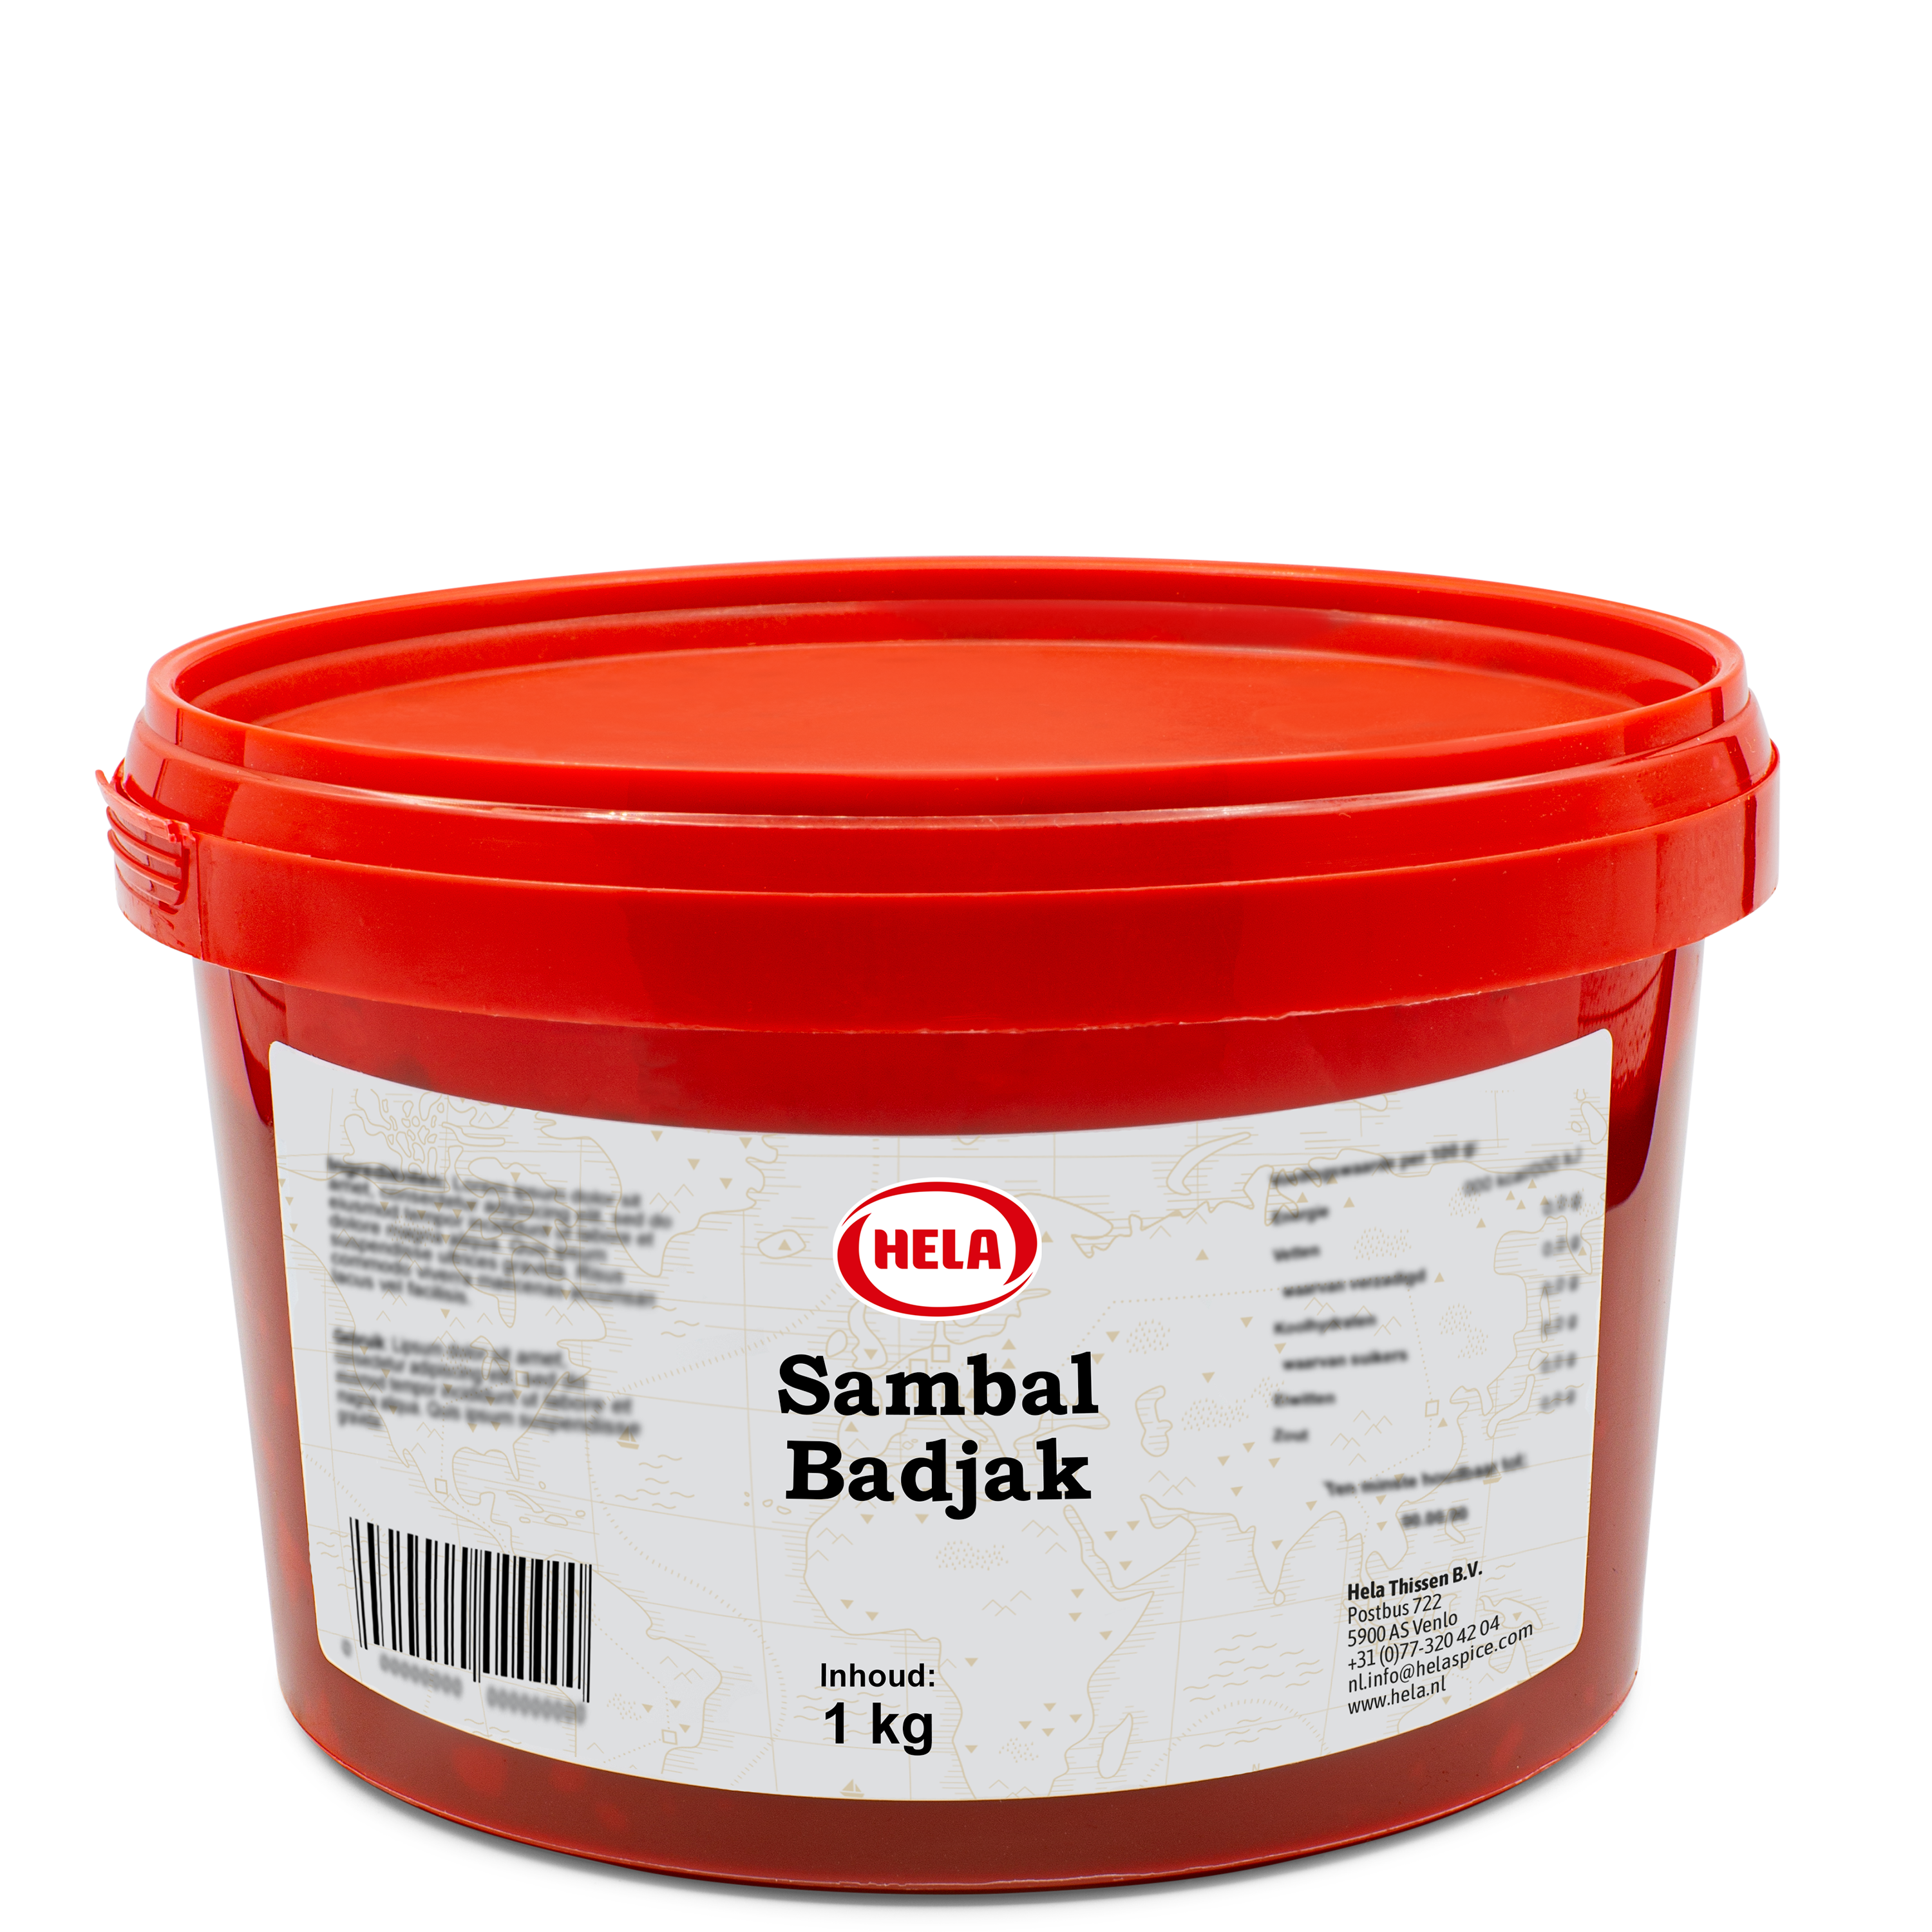 hela-sambal-badjak-1-kg.png